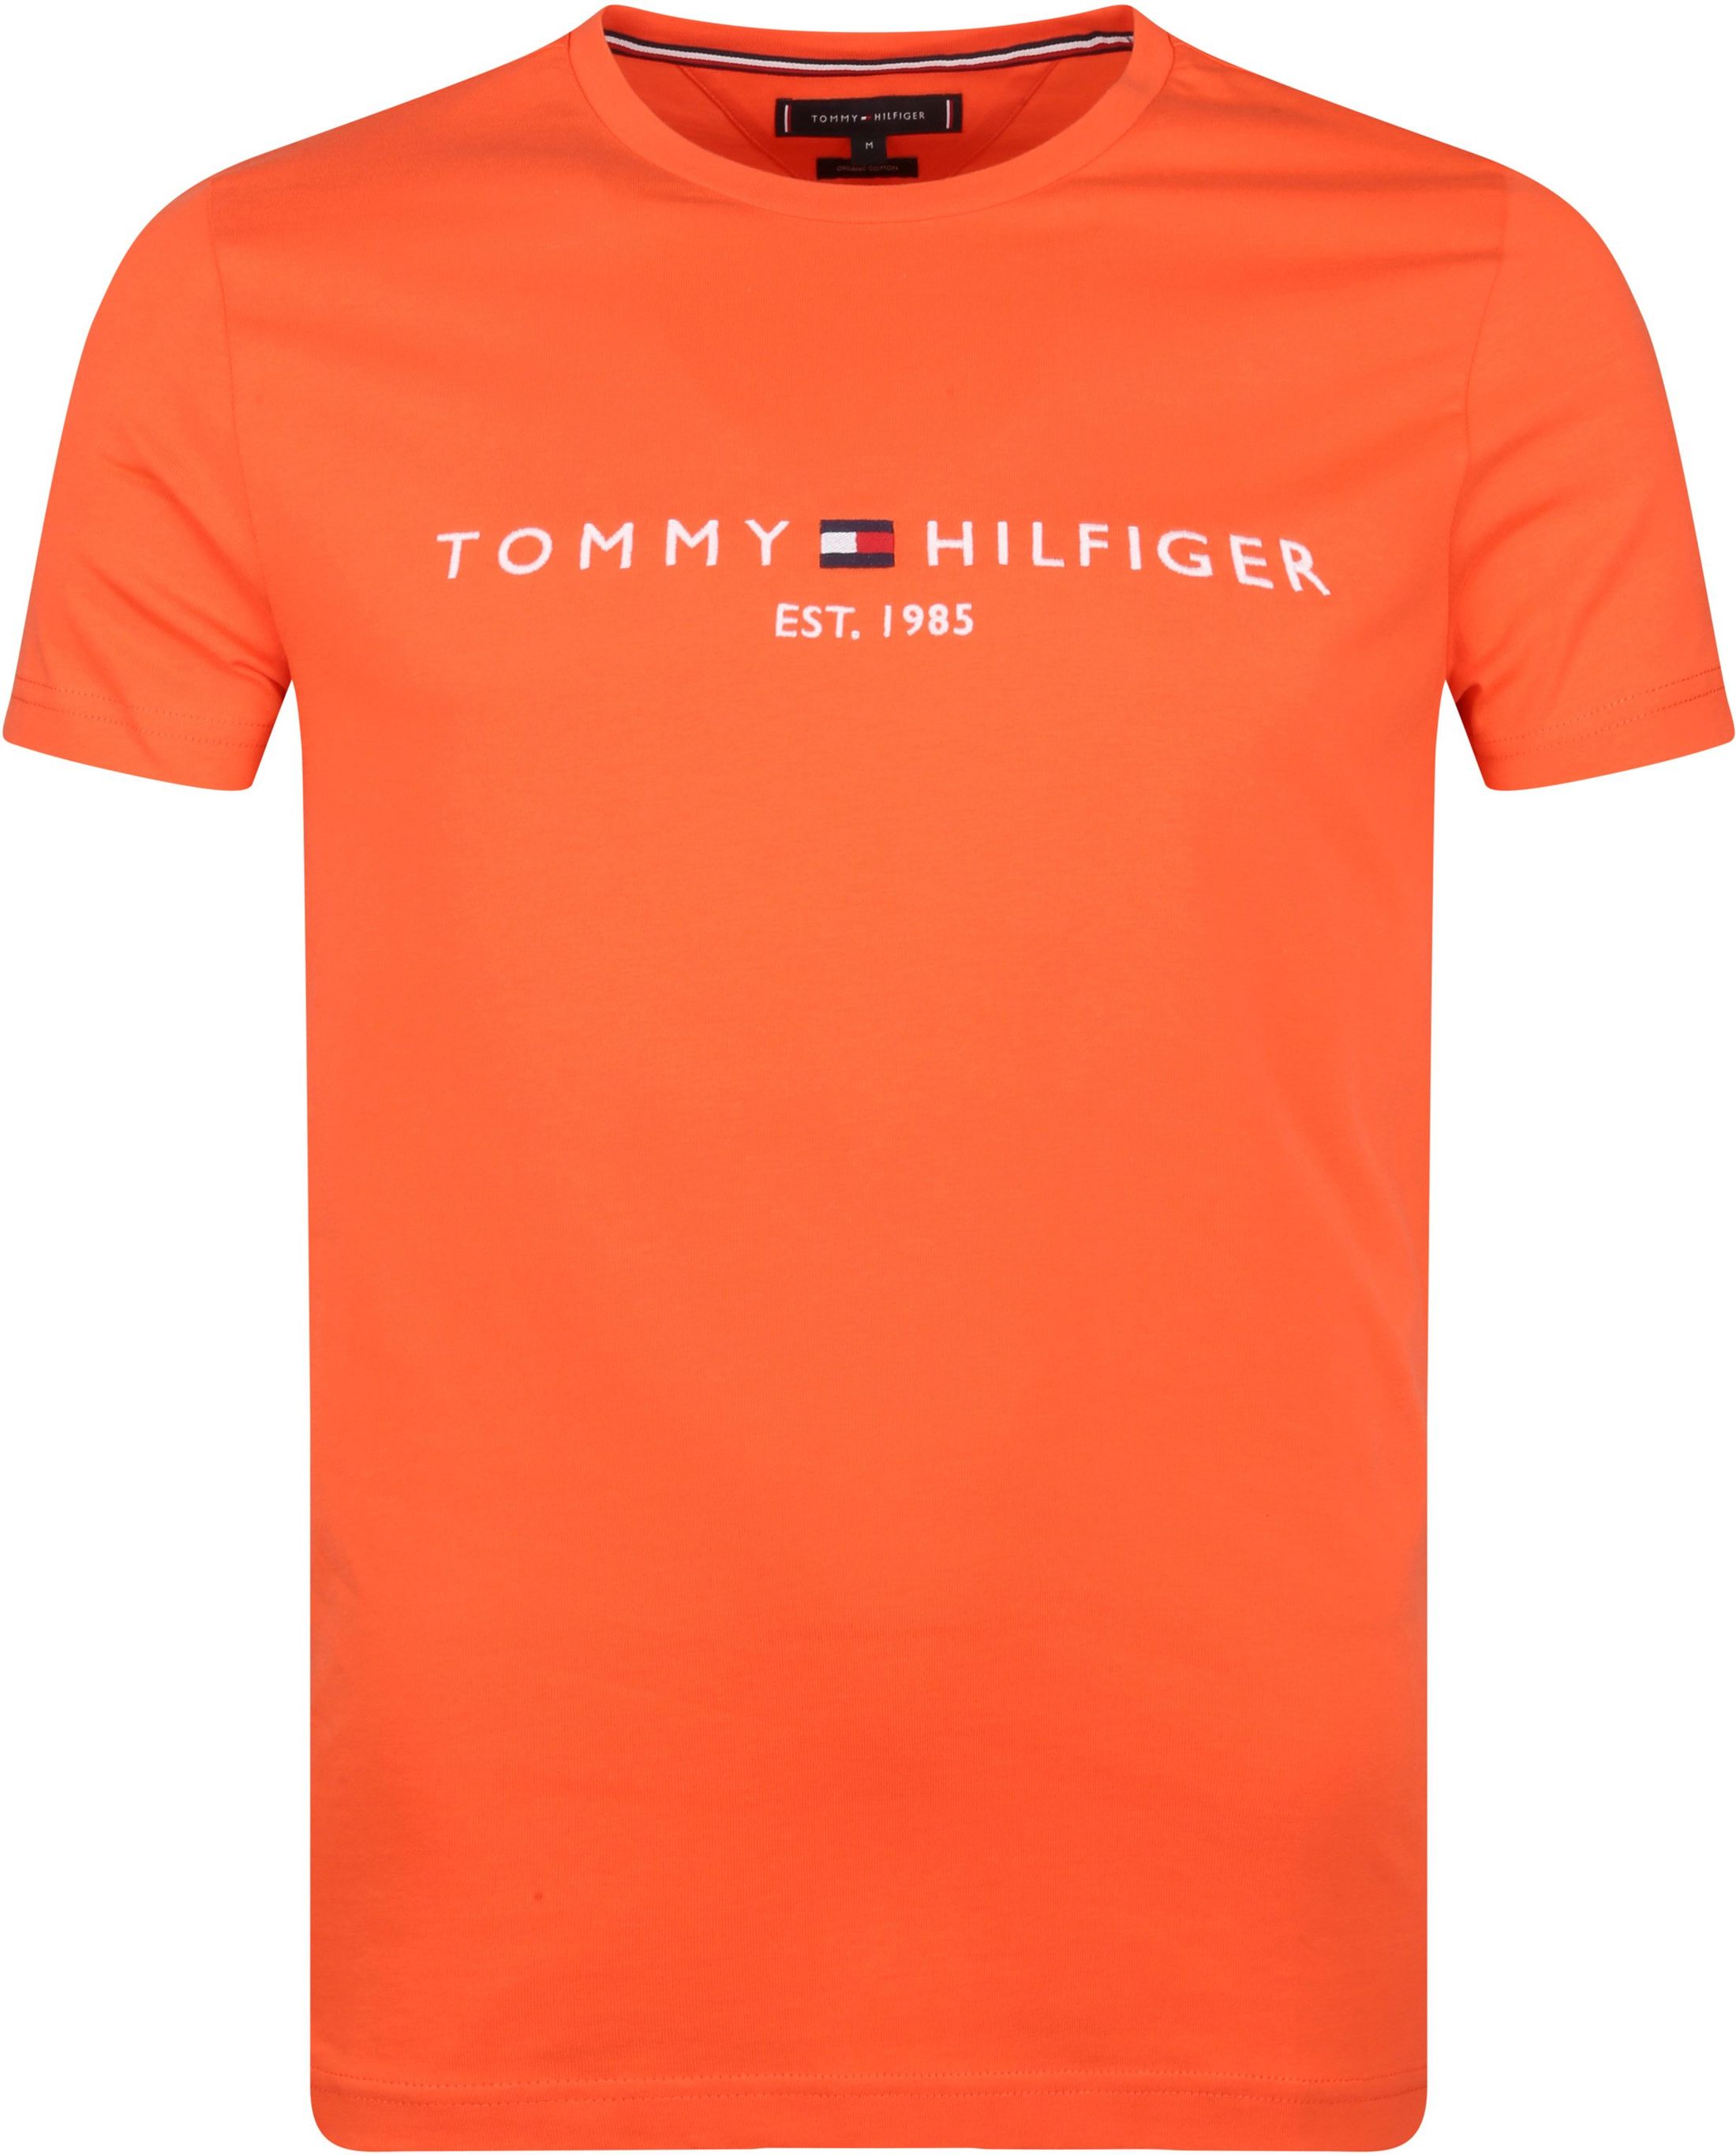 Tommy Hilfiger Logo T Shirt Orange size L